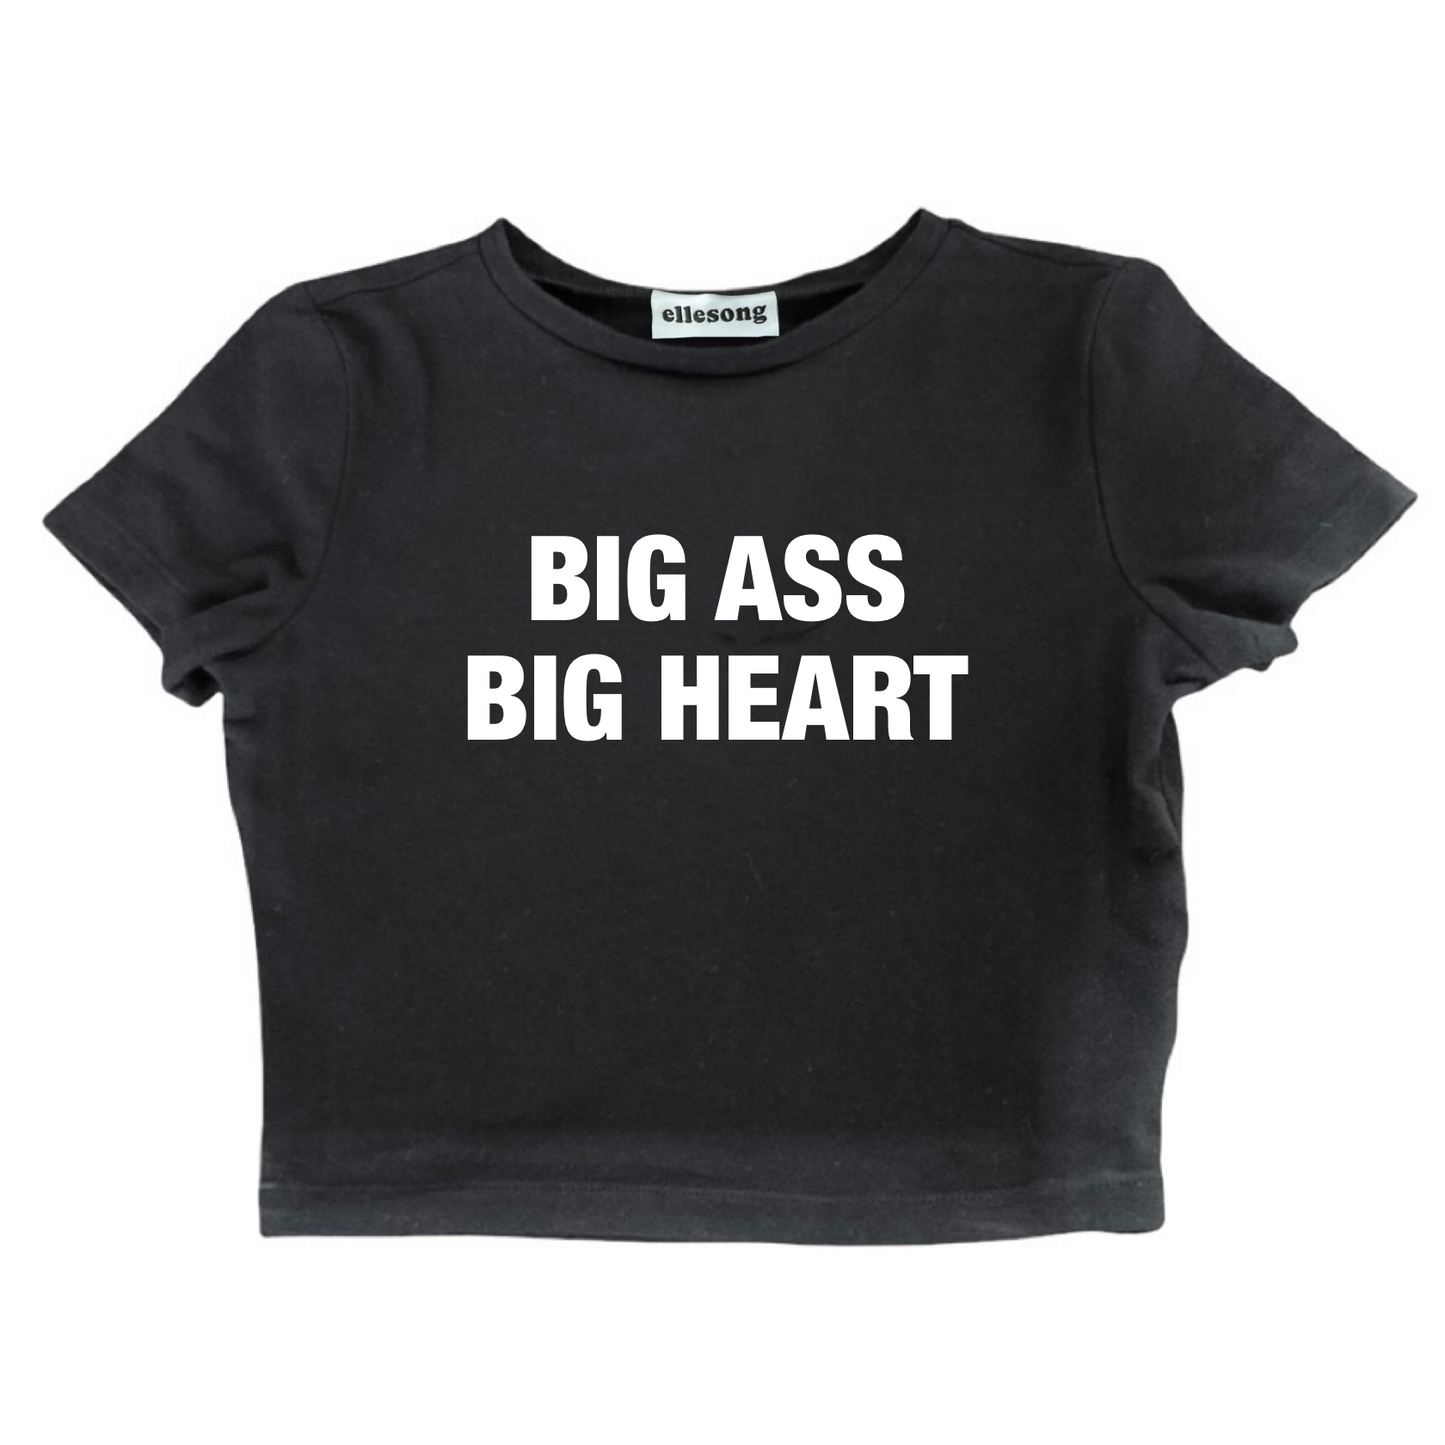 Big Ass Big Heart Baby Tee